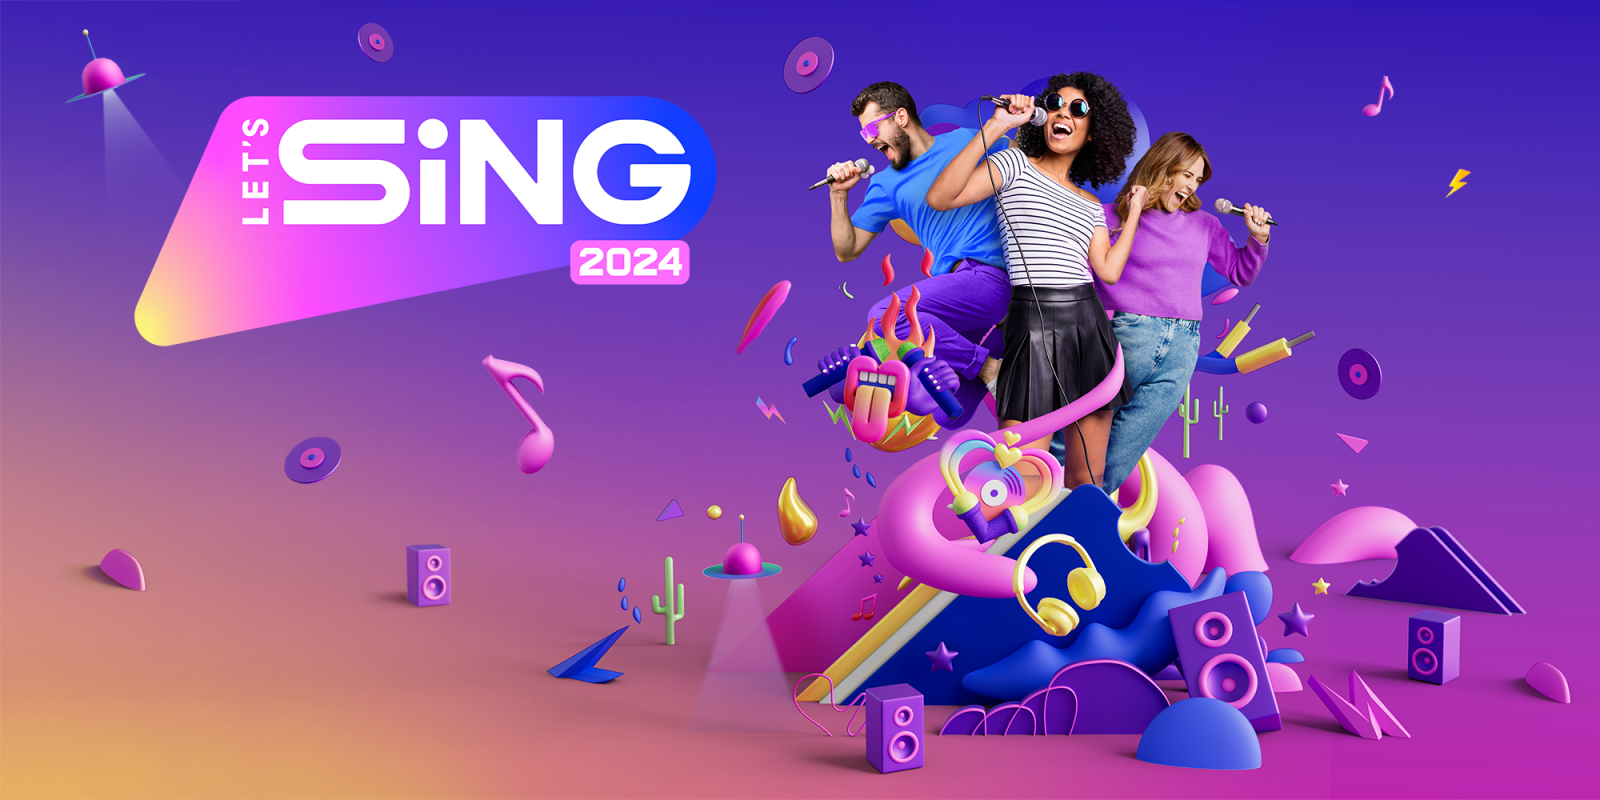 Let's Sing 2024 incluye Canciones Españolas